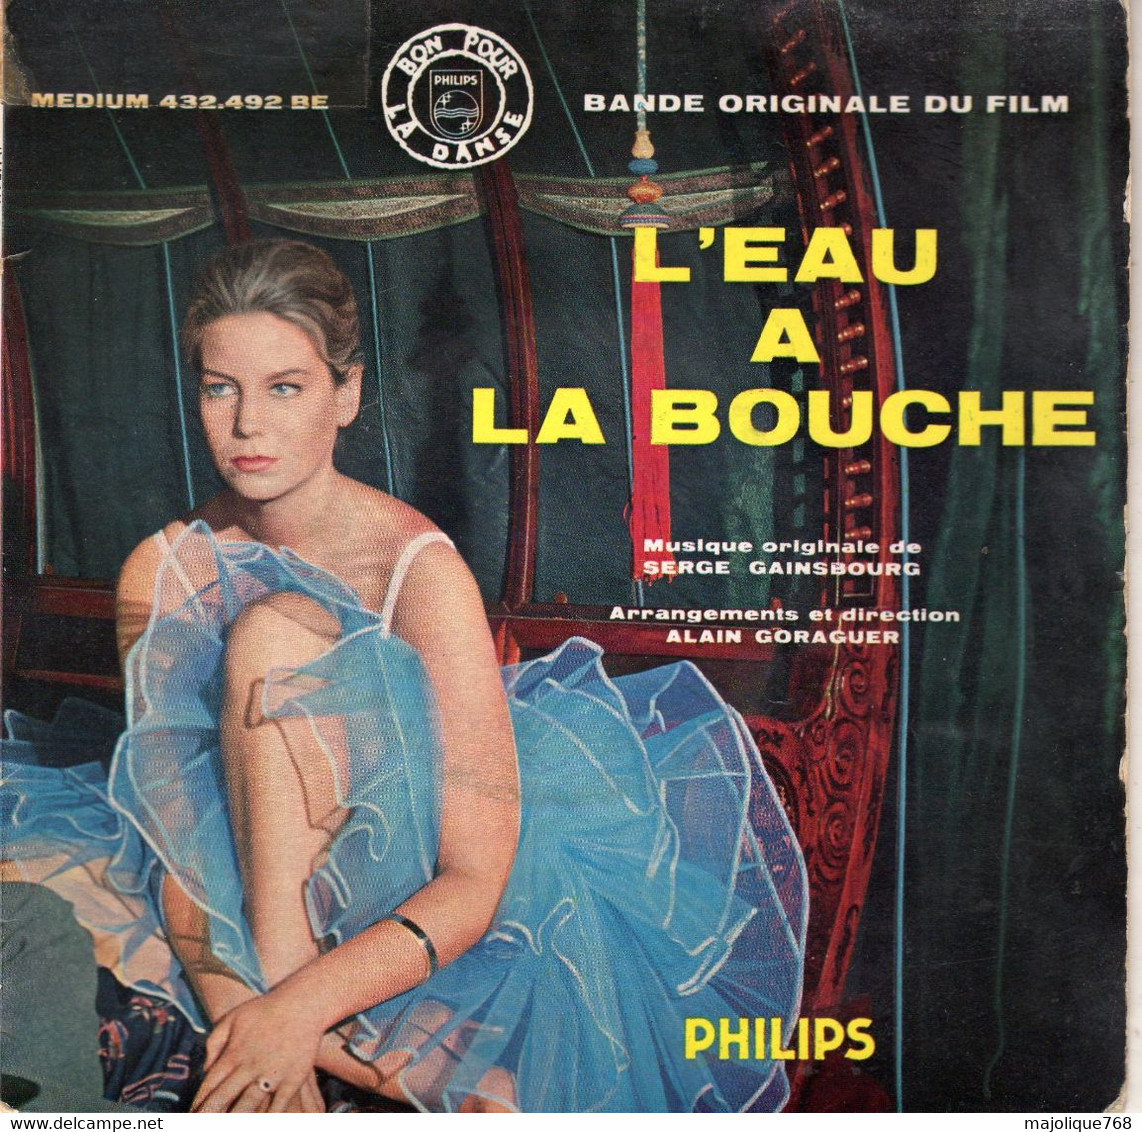 Disque - Bande Original Du Film - L'eau à La Bouche - Musique Original De Serge Gainsbourg - Philips 432.492 BE - 1960 - Soundtracks, Film Music